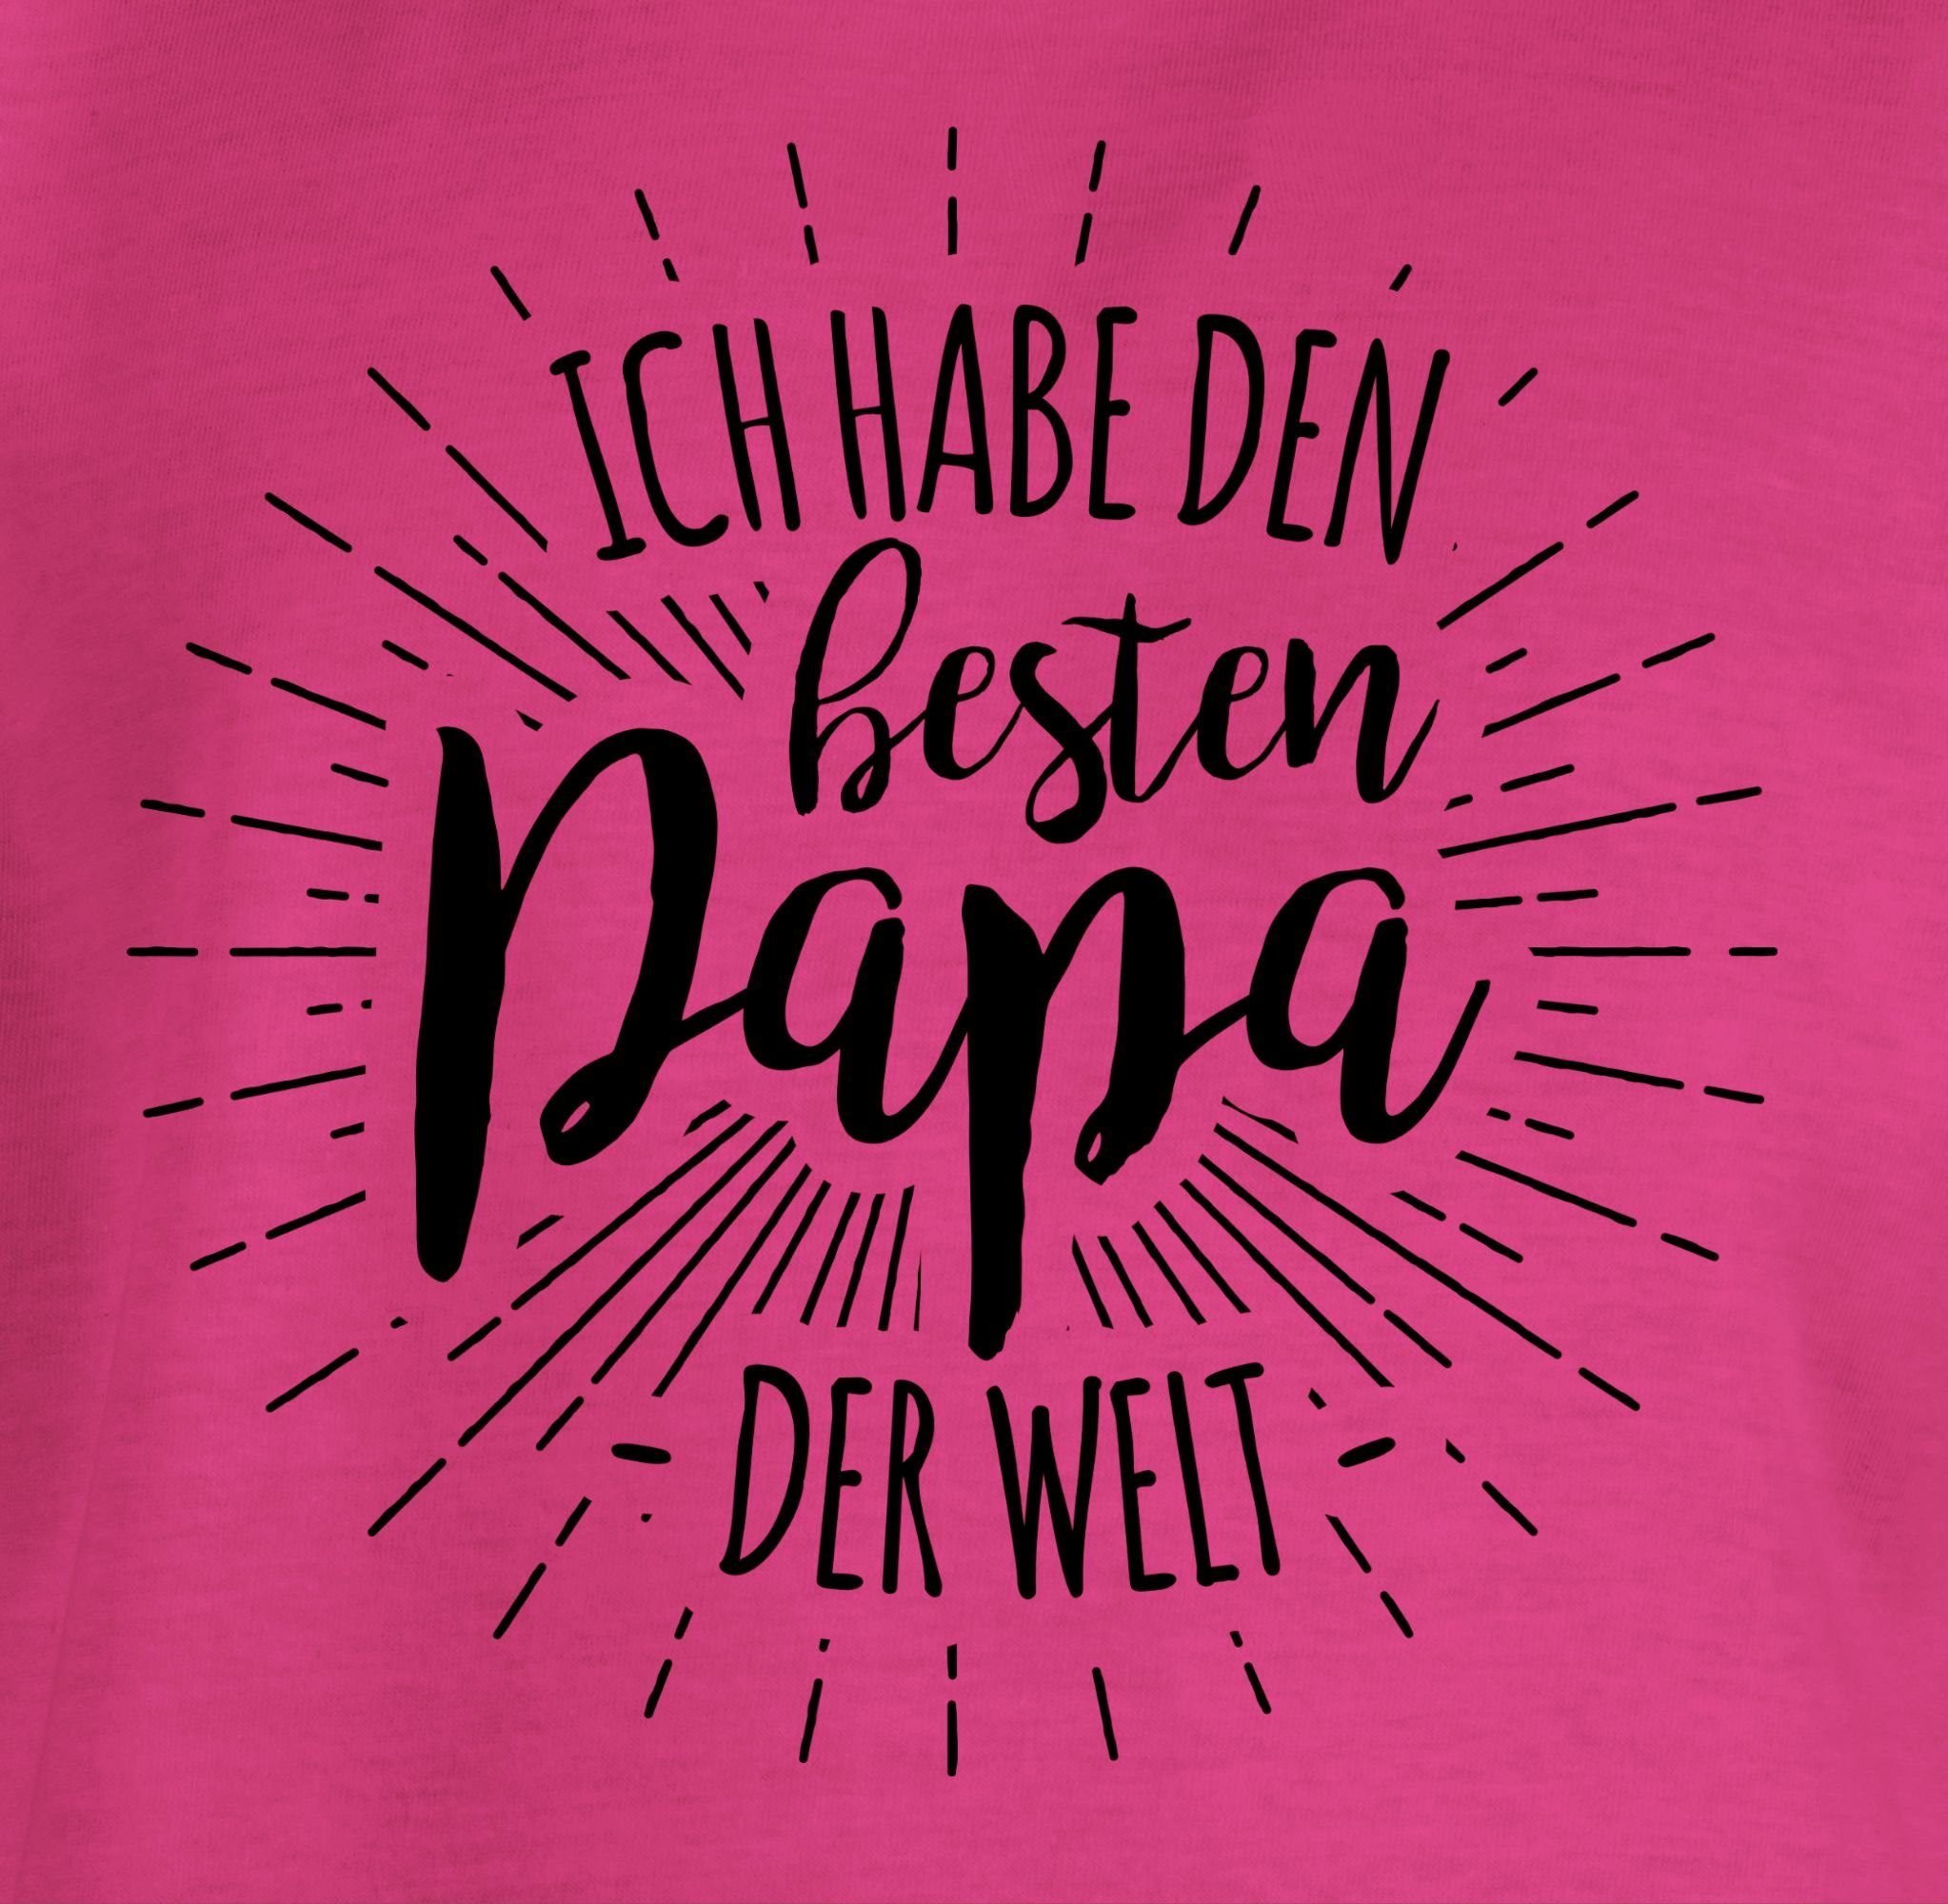 Shirtracer T-Shirt Ich habe den Papa Vatertag der Papa Fuchsia für Geschenk 1 Welt besten